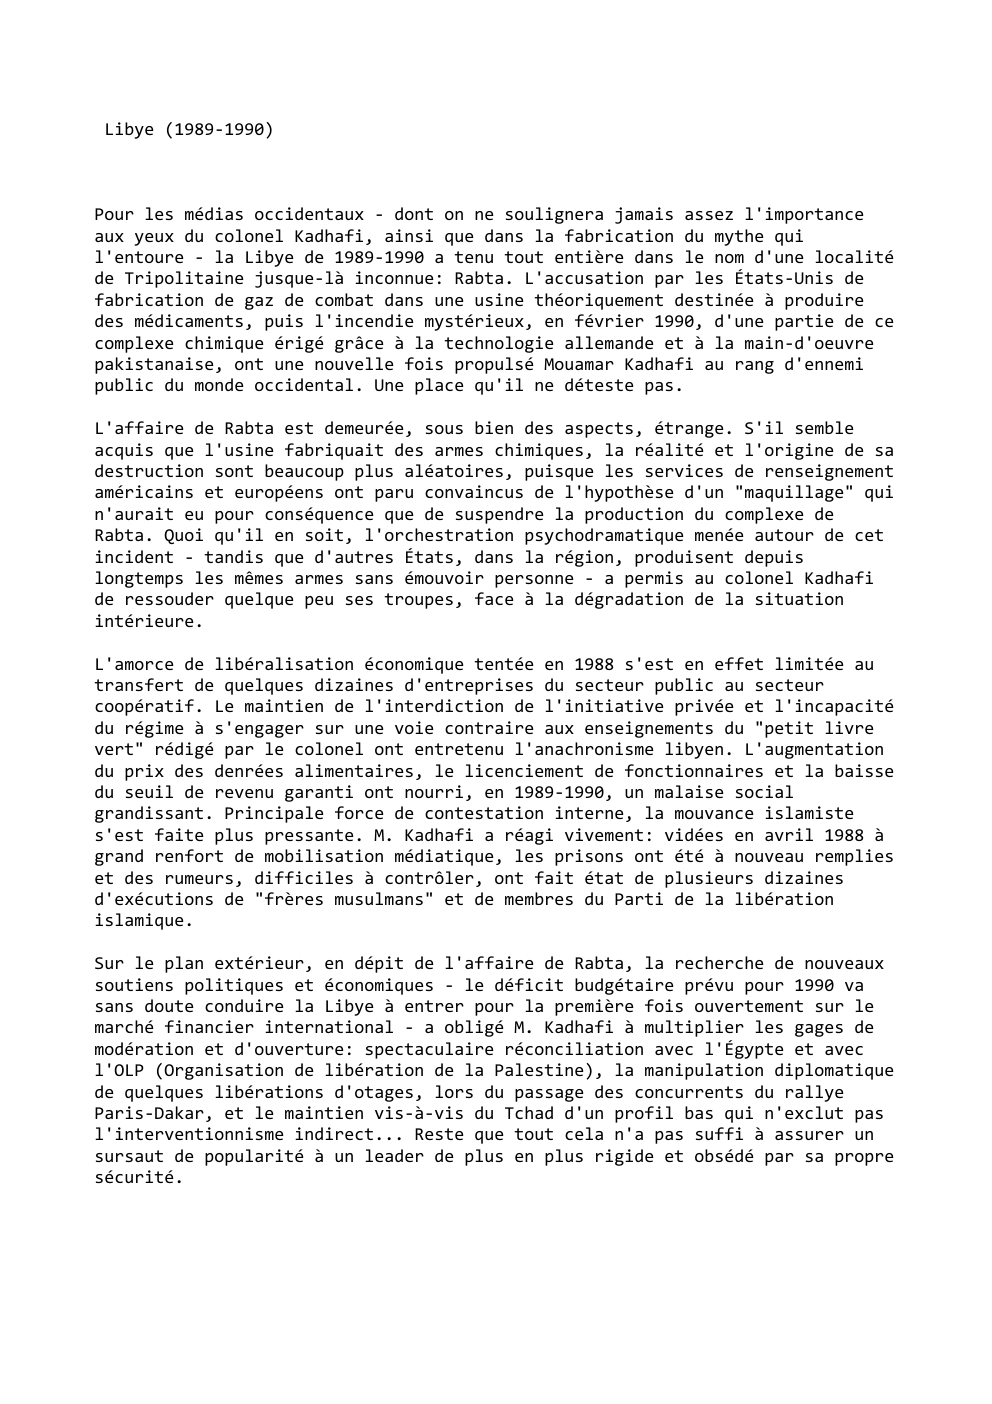 Prévisualisation du document Libye (1989-1990)

Pour les médias occidentaux - dont on ne soulignera jamais assez l'importance
aux yeux du colonel Kadhafi, ainsi...